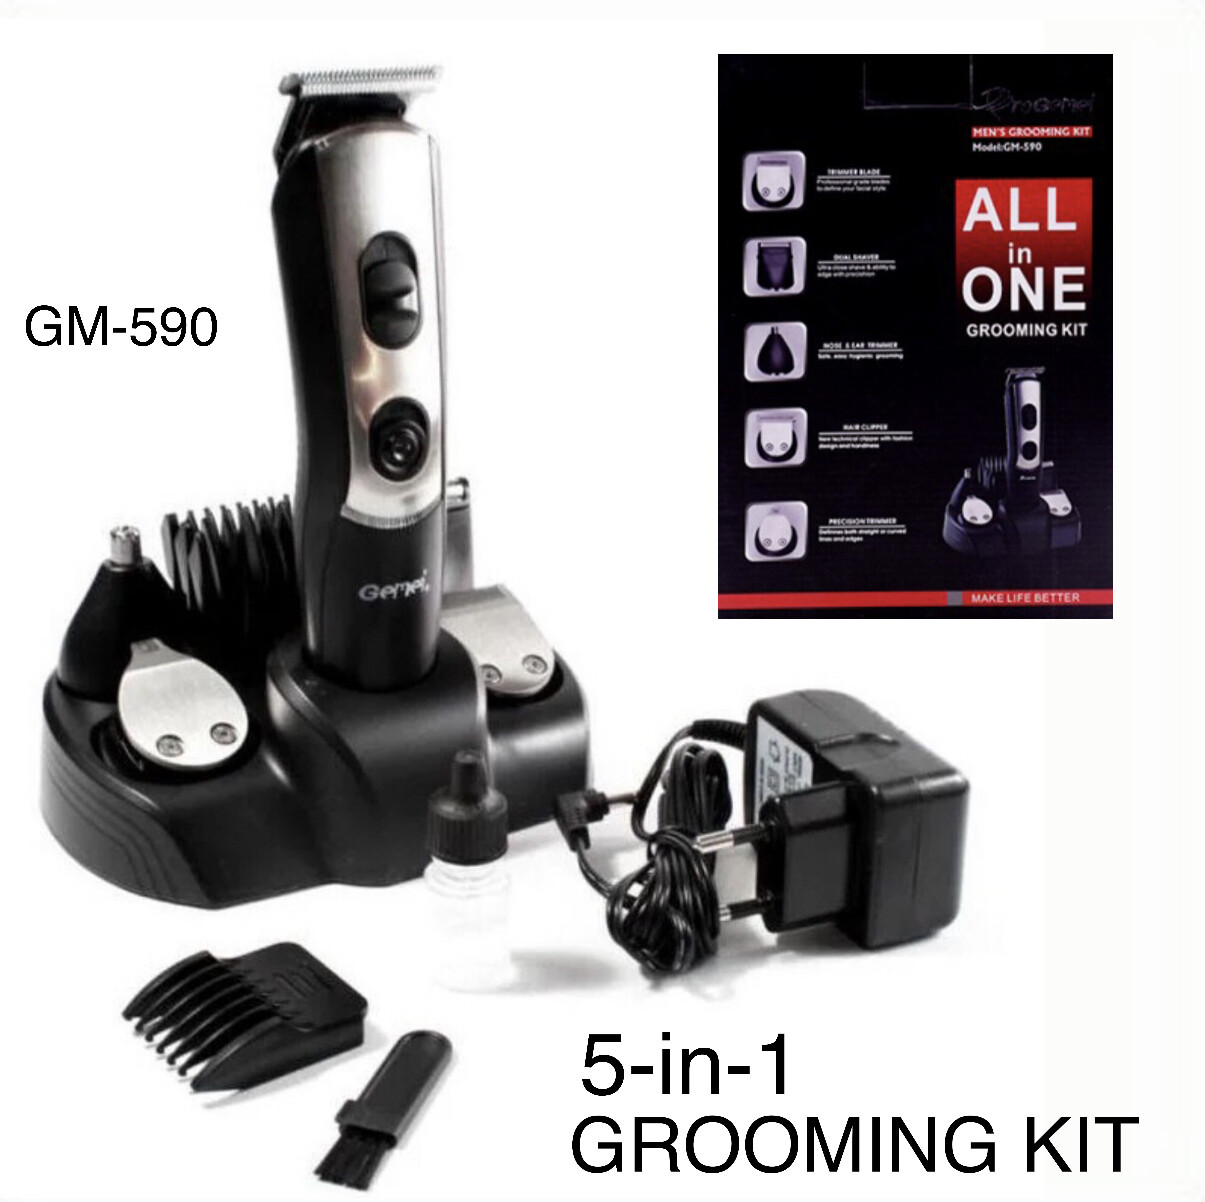 5-in-1 Grooming Kit GM-590